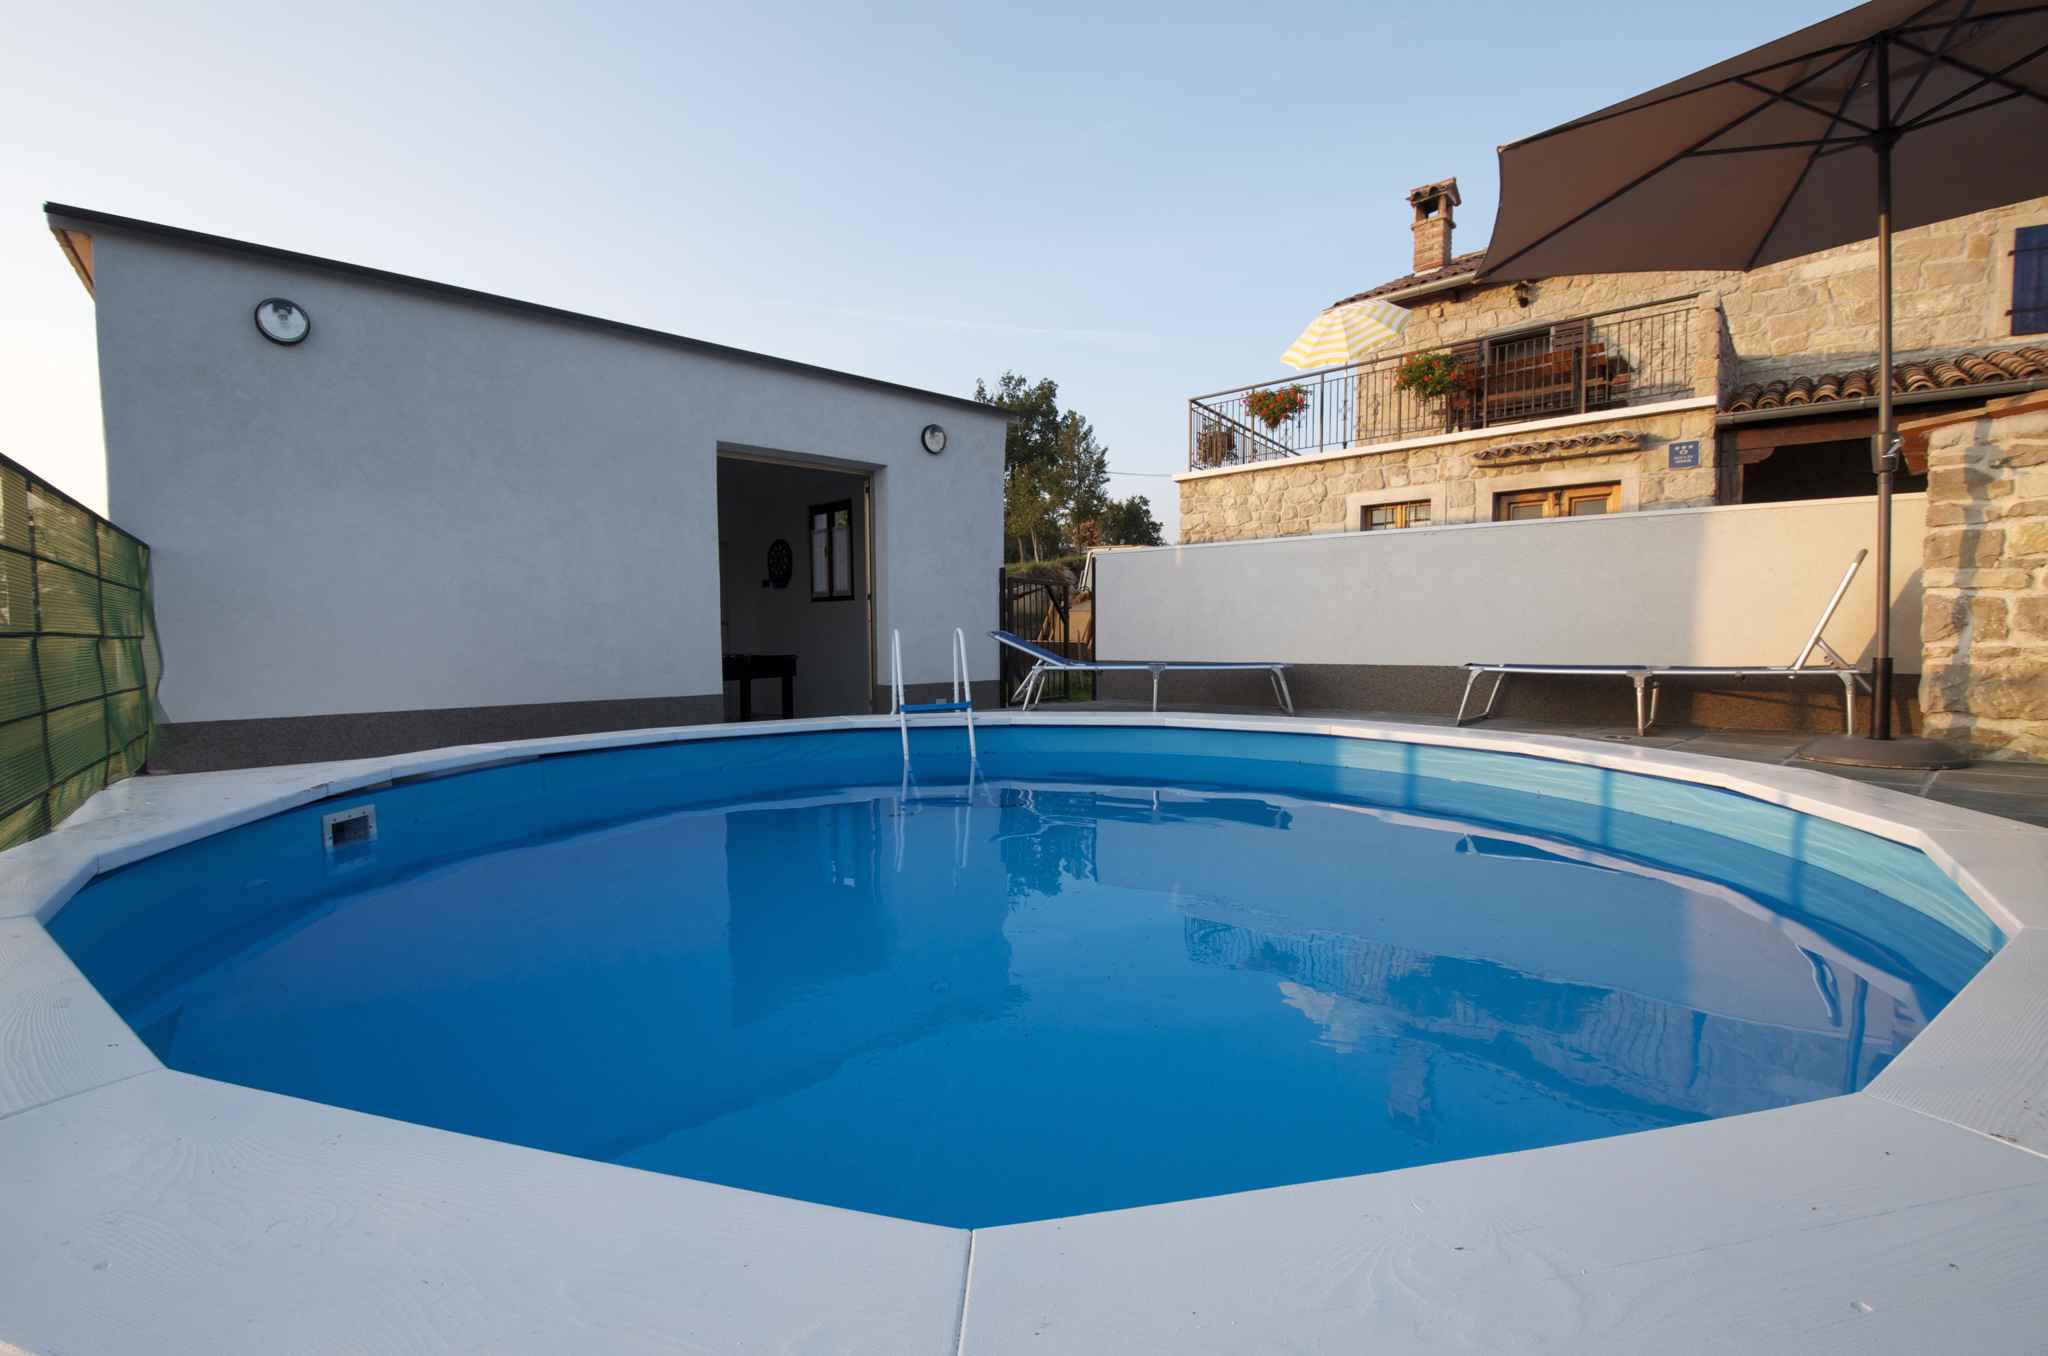 Ferienhaus in ruhiger Lage mit Pool  in Kroatien